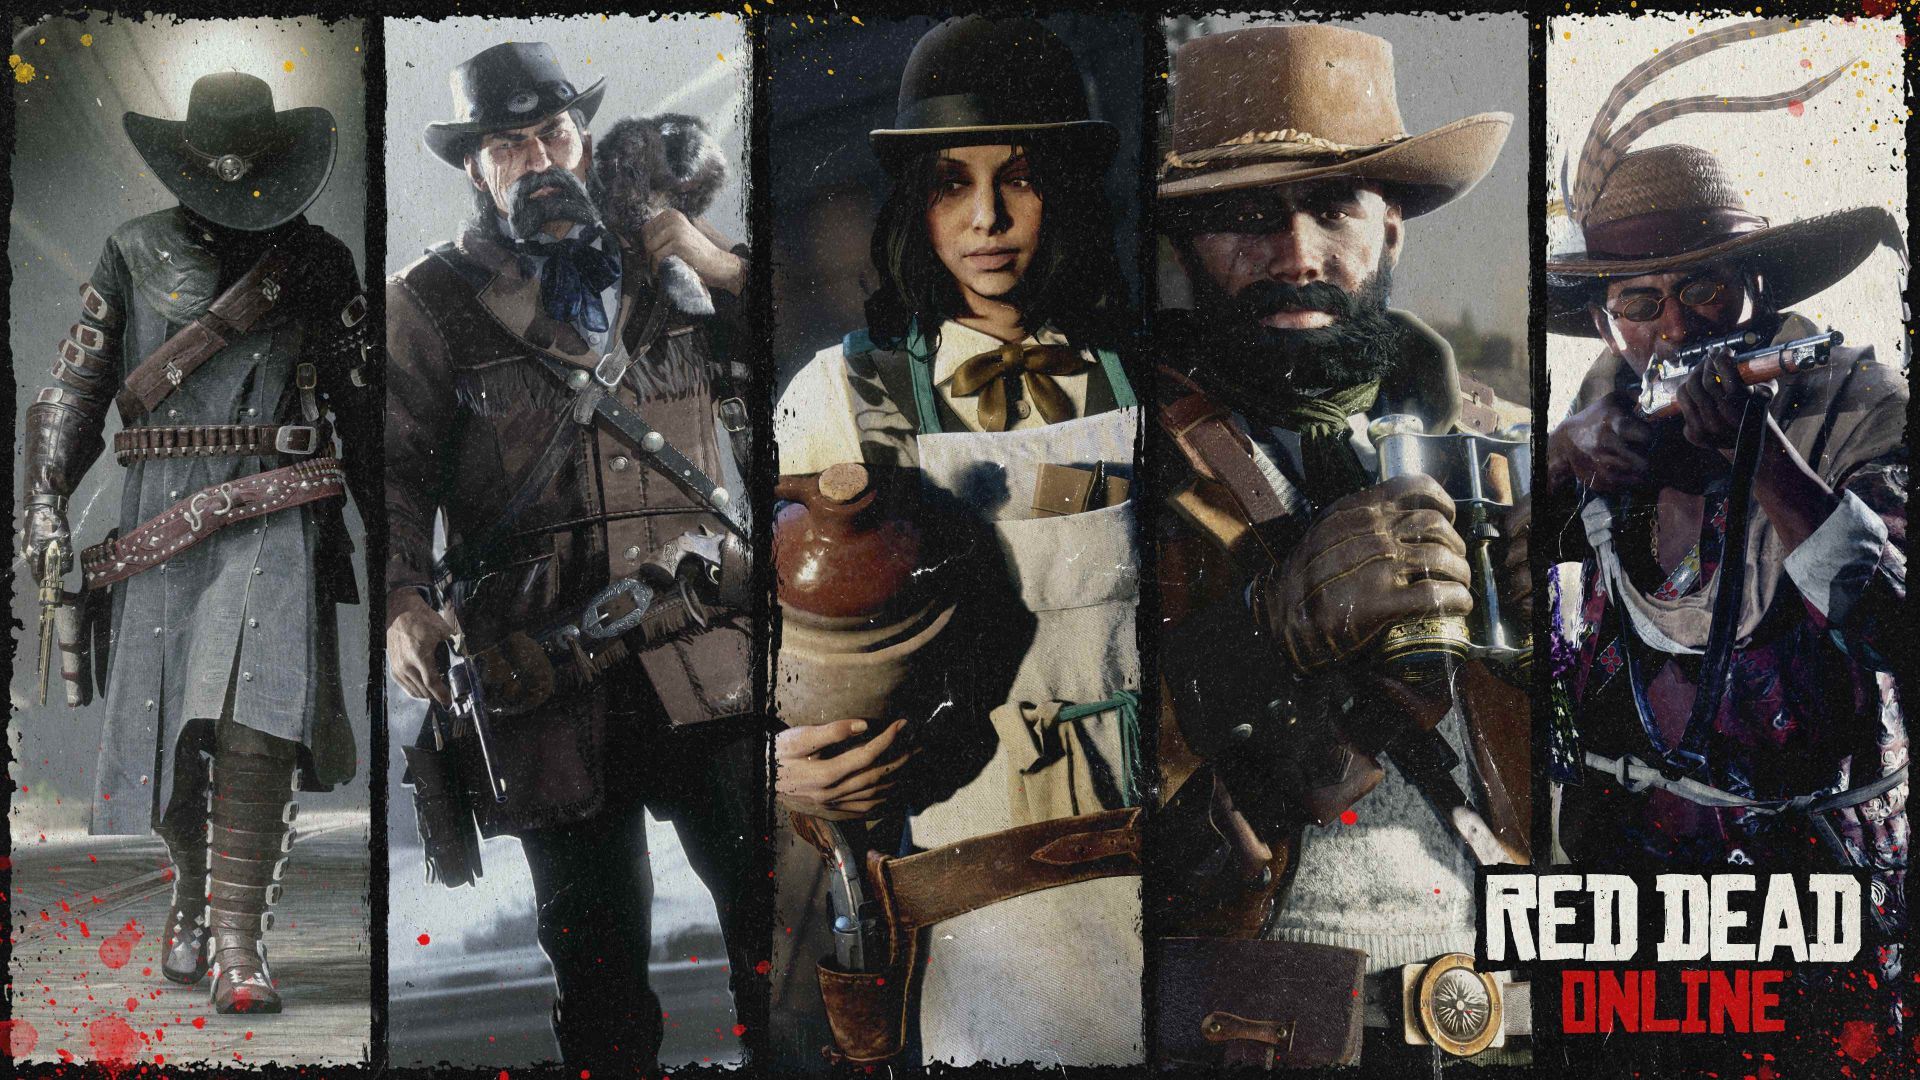 Belle semaine en perspective pour les entrepreneurs de l'Ouest dans Red Dead Online - Rockstar Games